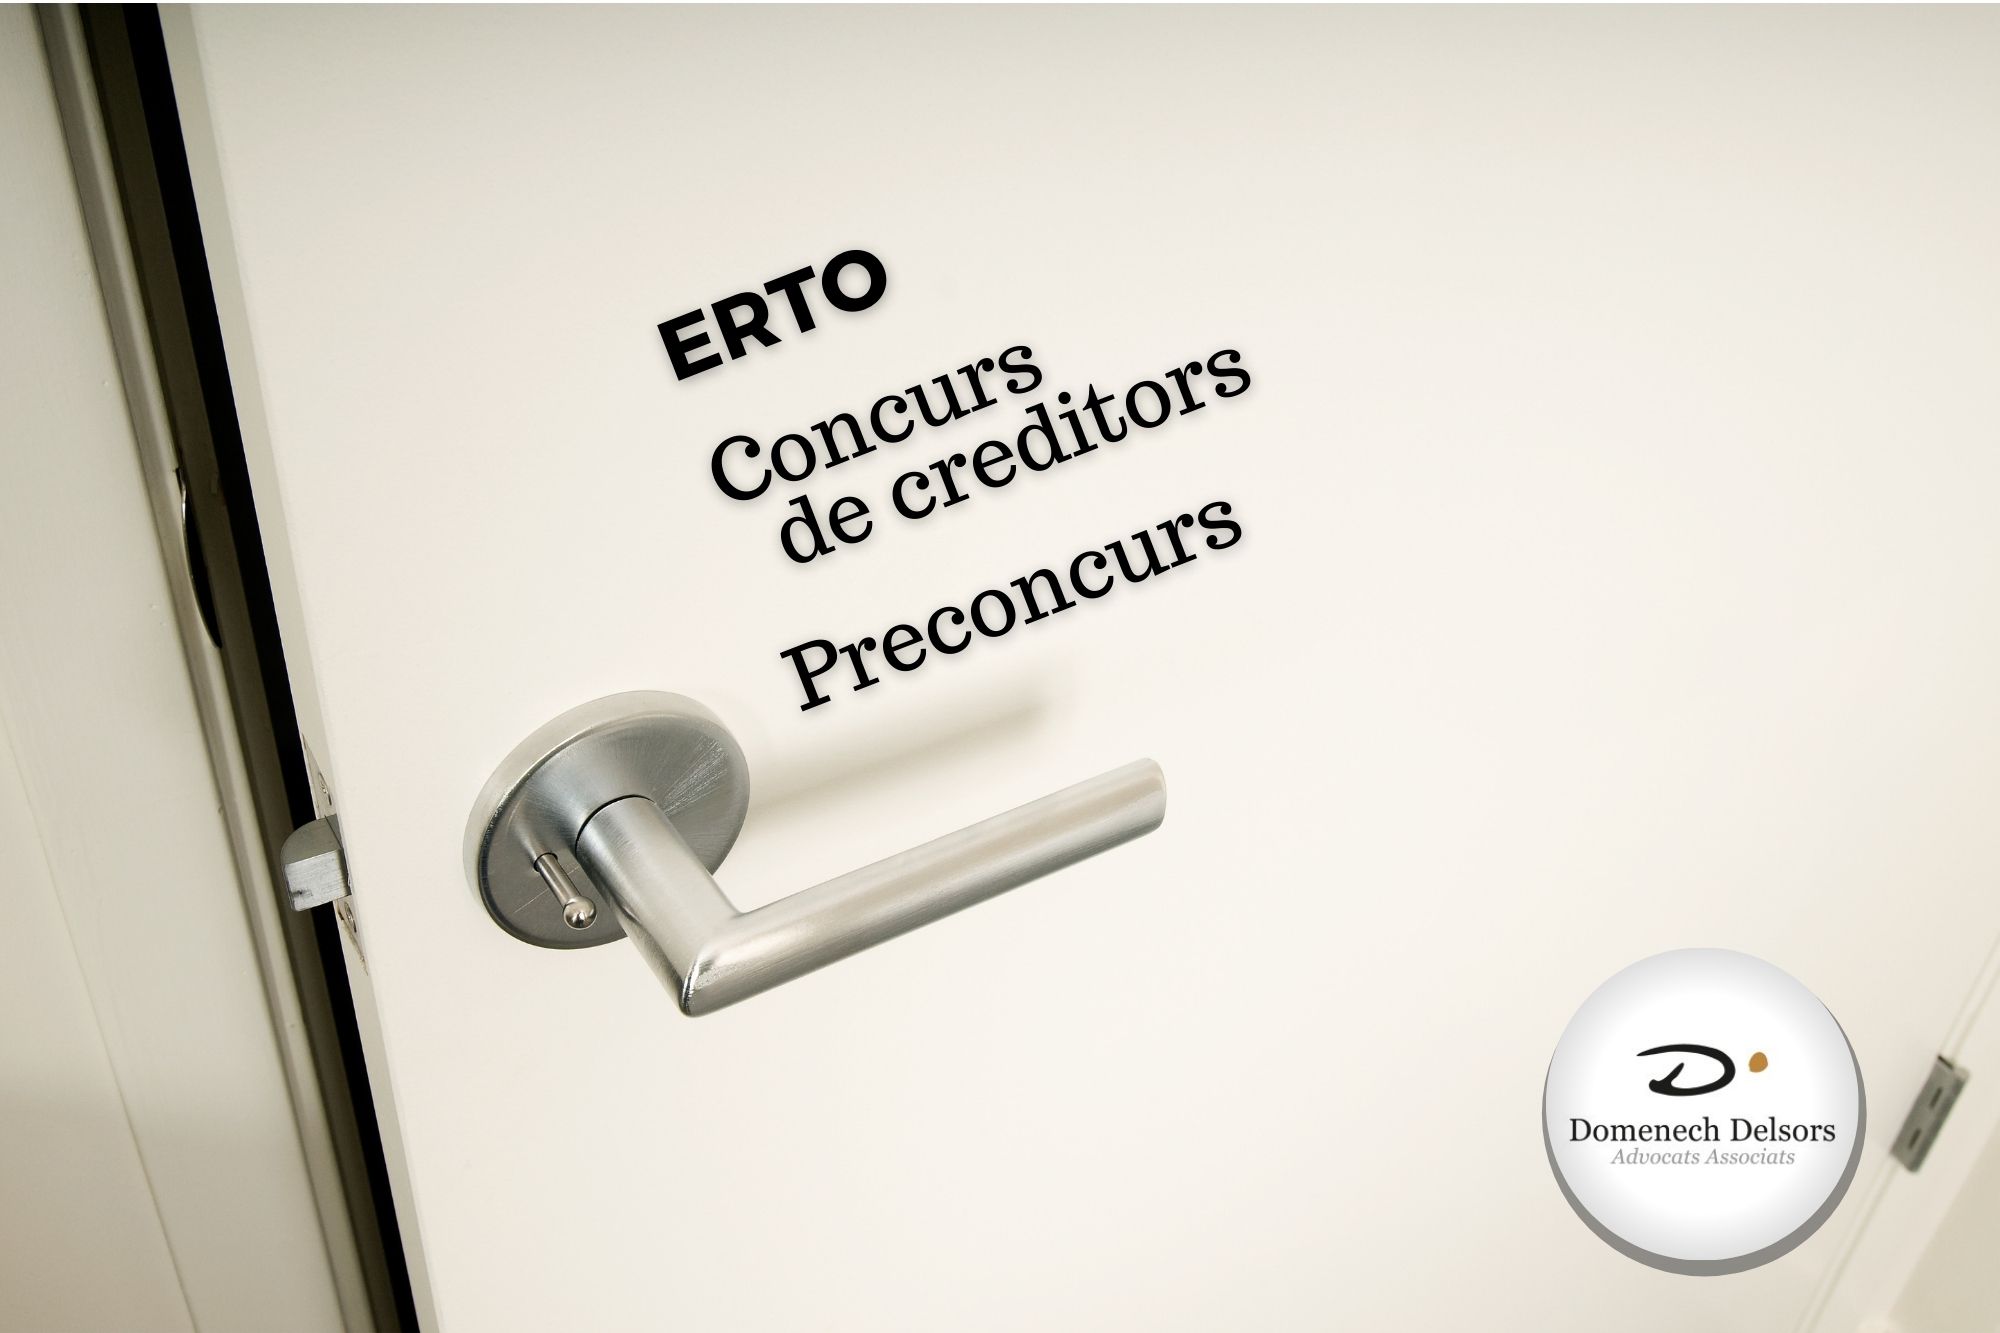 ERTO I Concurs De Creditors, Solucions Enfront De La Crisi De La Covid19